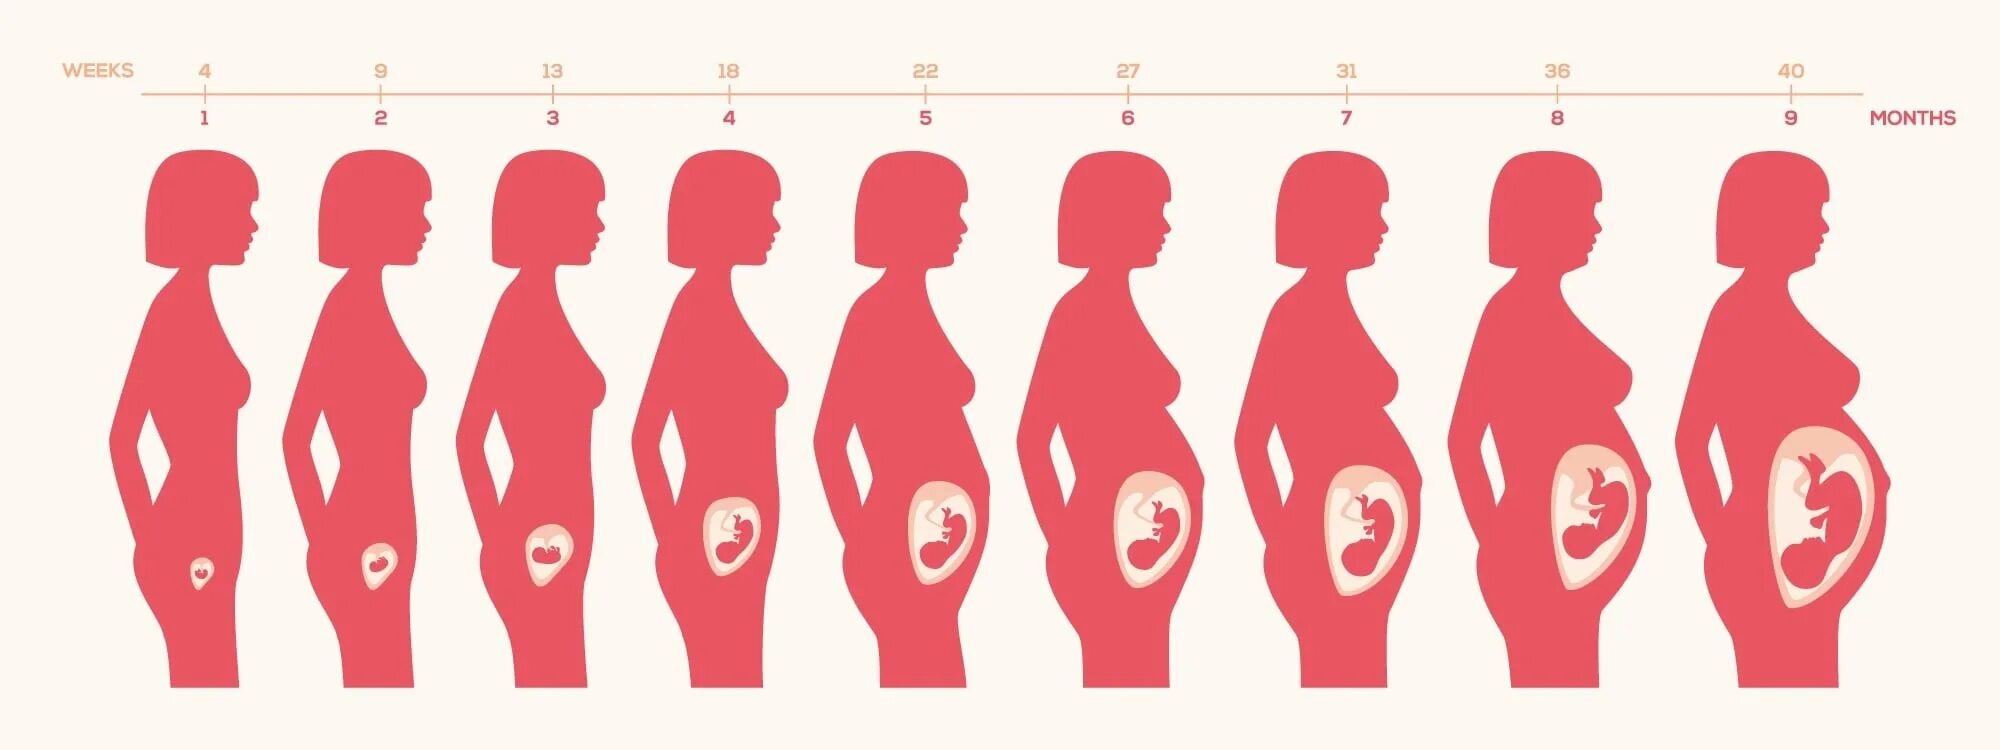 Этапы роста ребенка в утробе. Расположение ребенка в животе по неделям. Беременность на разных сроках. Расположение малыша в матке по неделям.